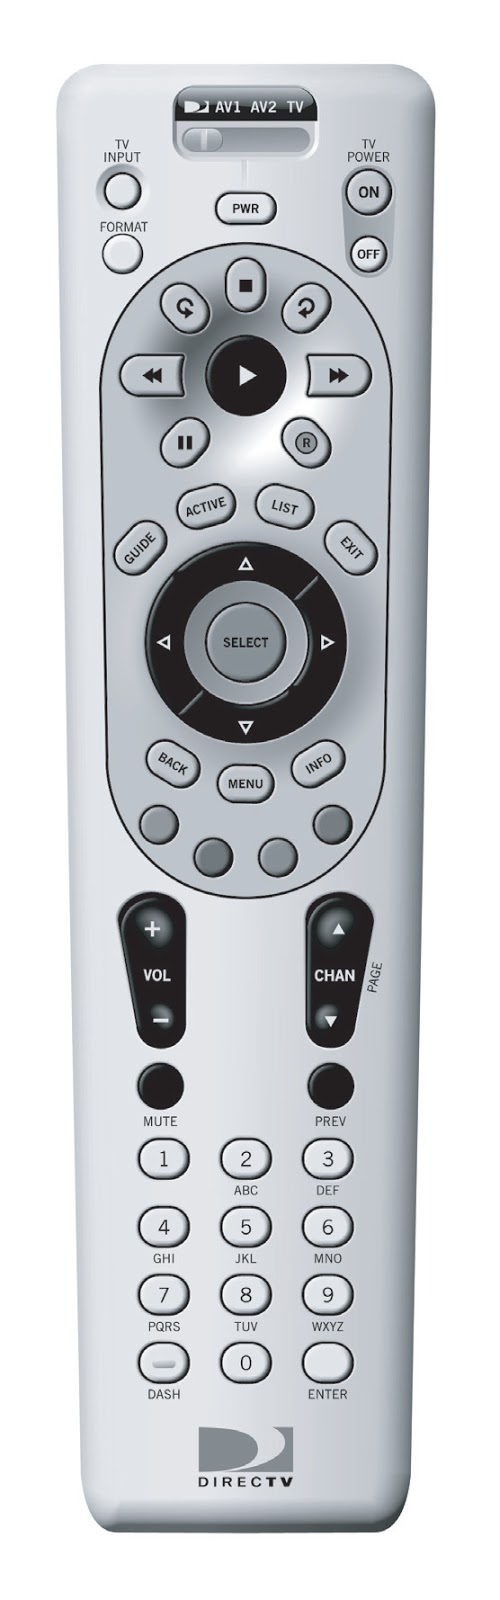 Program Directv Remote For Hughes Receiver